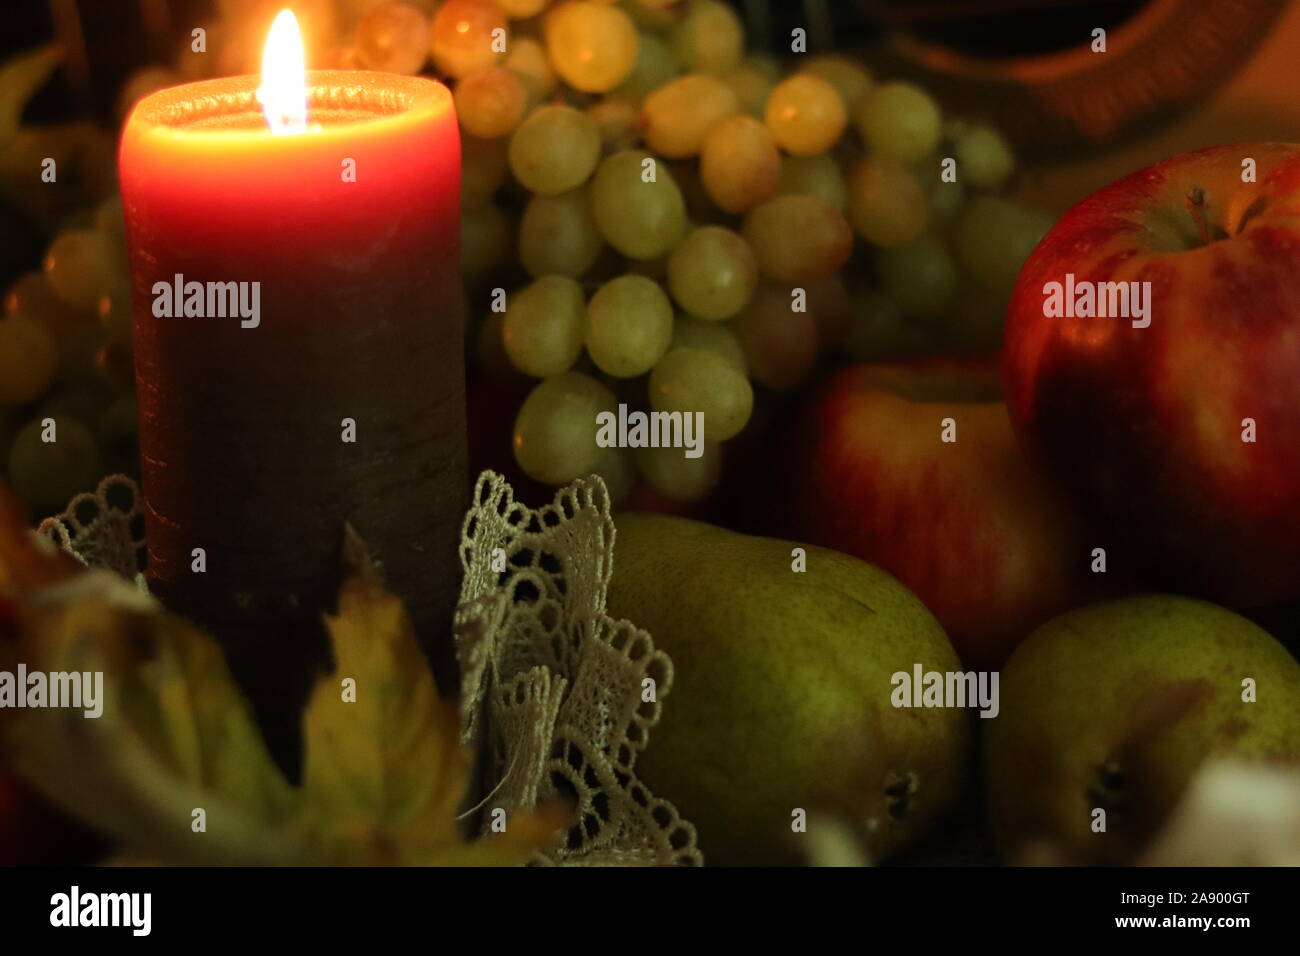 Autumn harvest ancora in vita. Casa accogliente calore. Candela e composizione di frutta: mele rosse, verdi le pere e le uve. Foto Stock